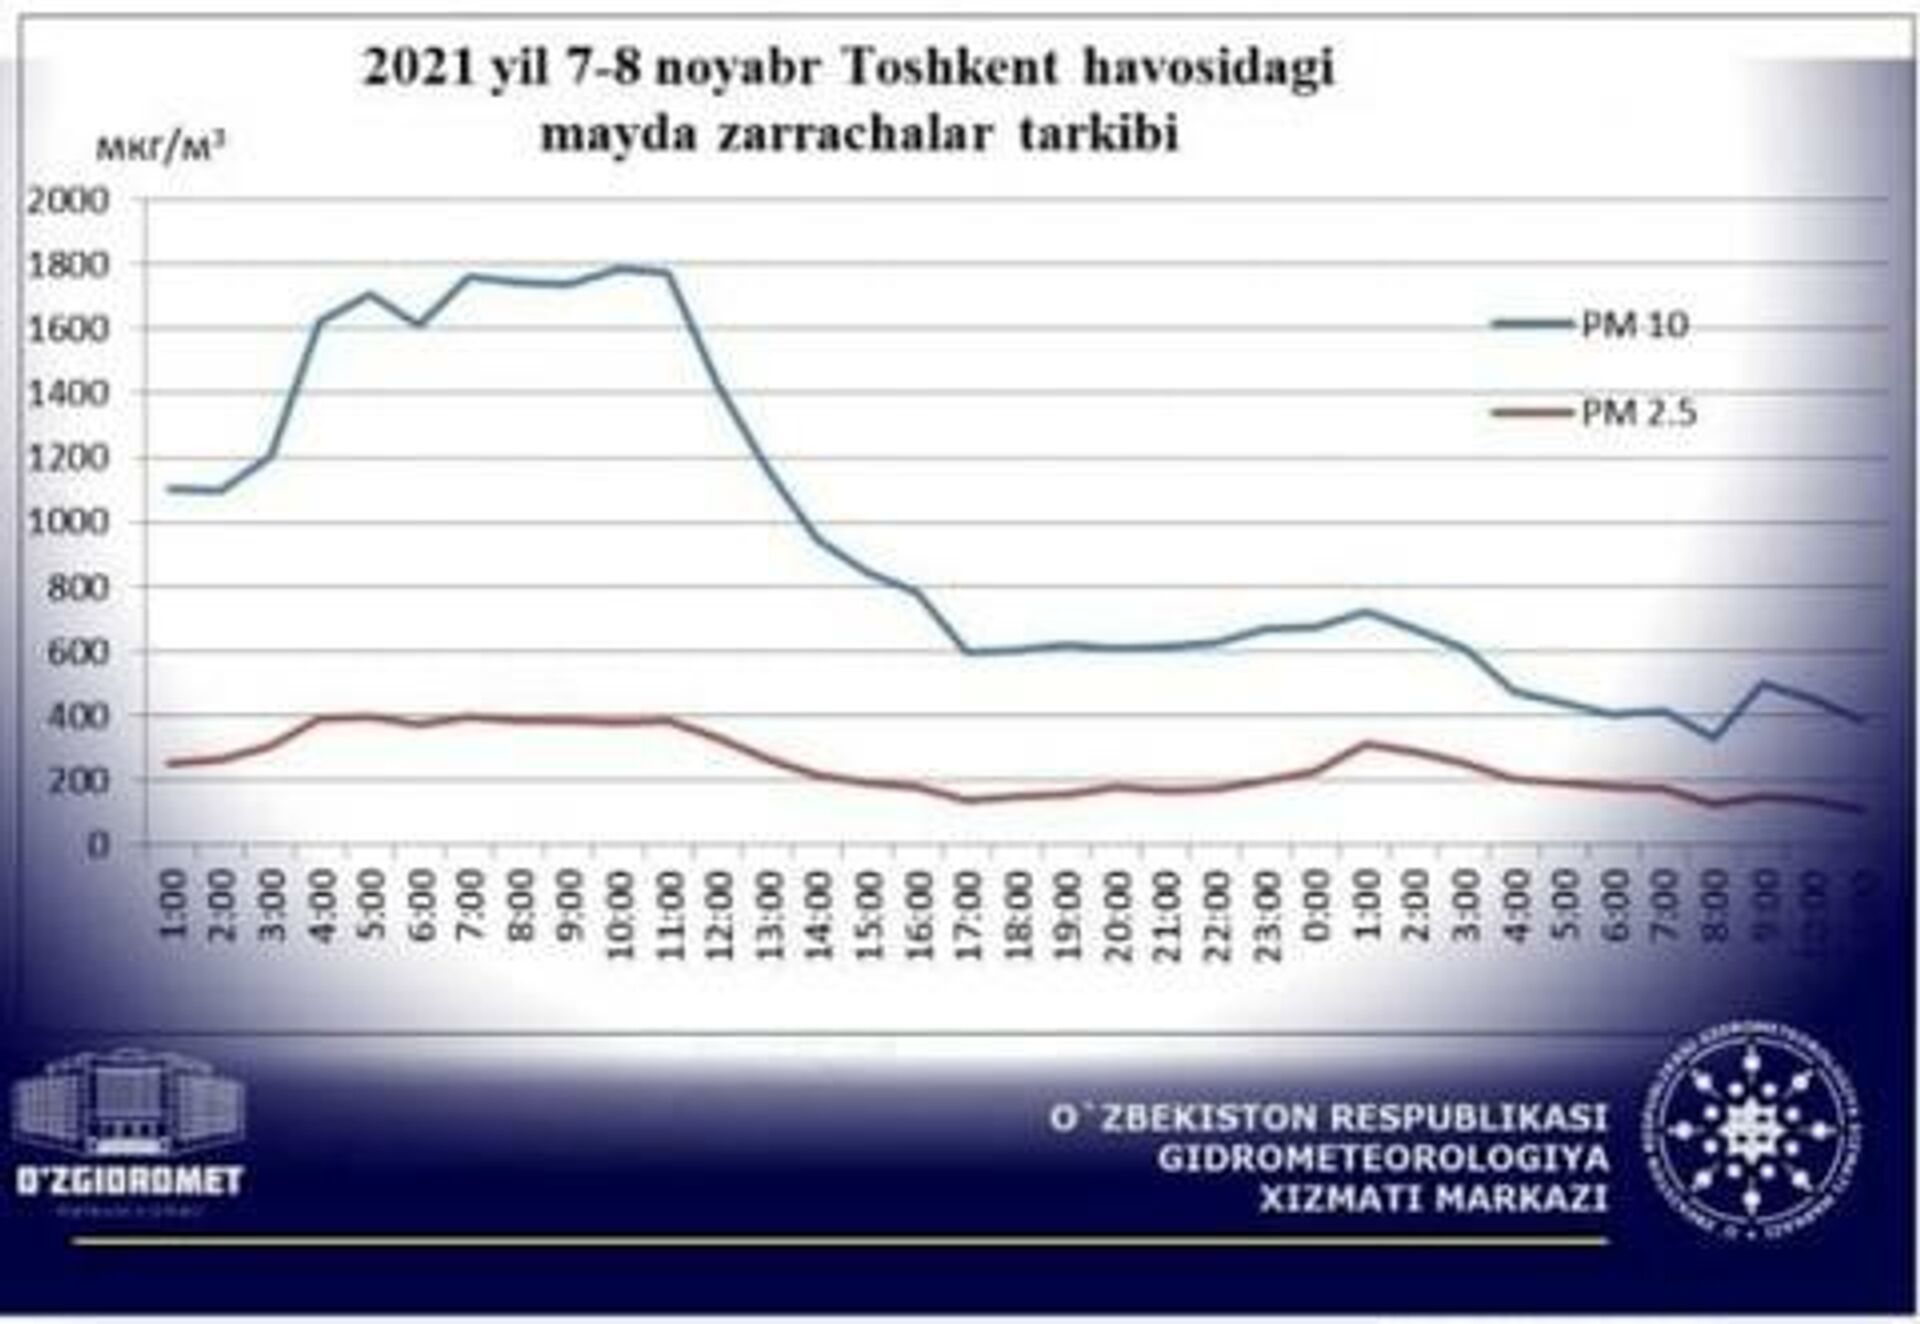 Уровень загрязнения воздуха в Ташкенте на 8 ноября - Sputnik Узбекистан, 1920, 08.11.2021